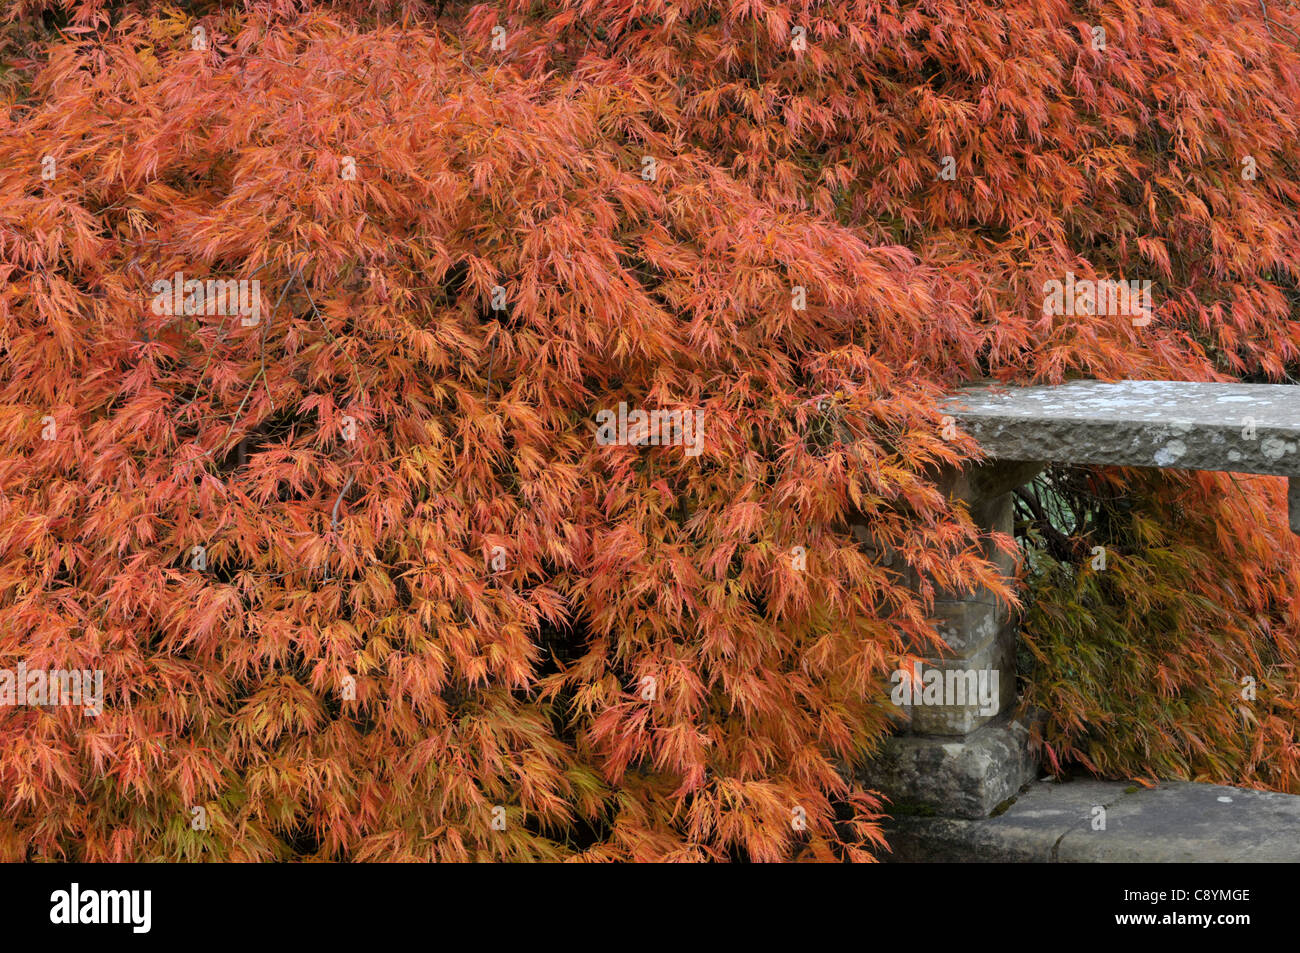 Japanese Maple: Acer palmatum 'dissectum' Stock Photo